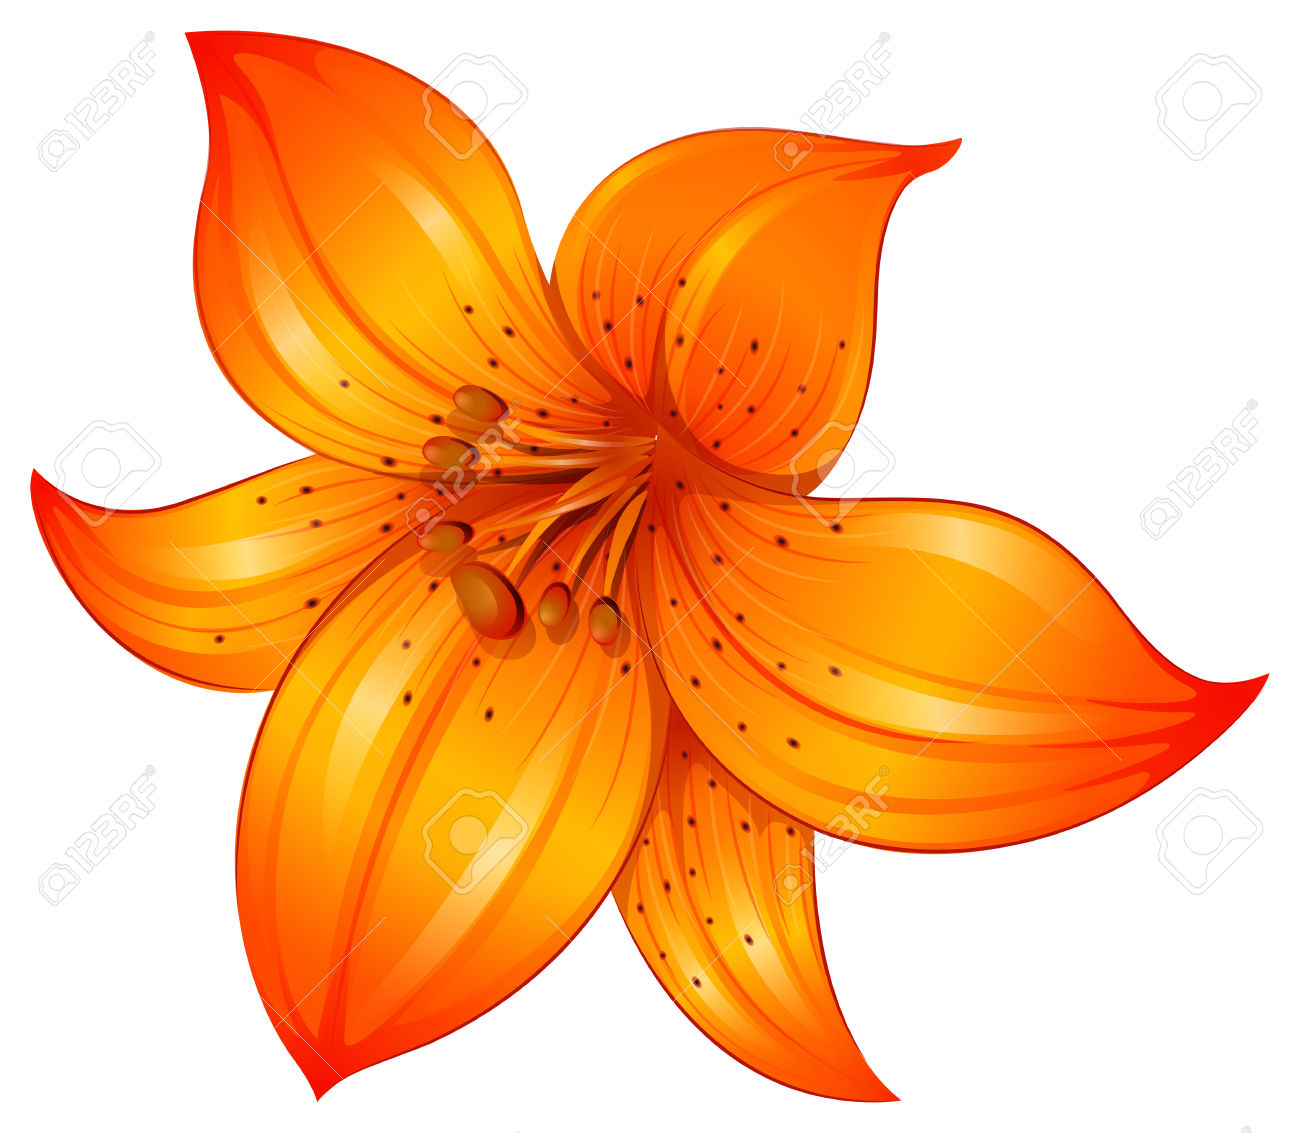 orange flower clip art free - photo #37